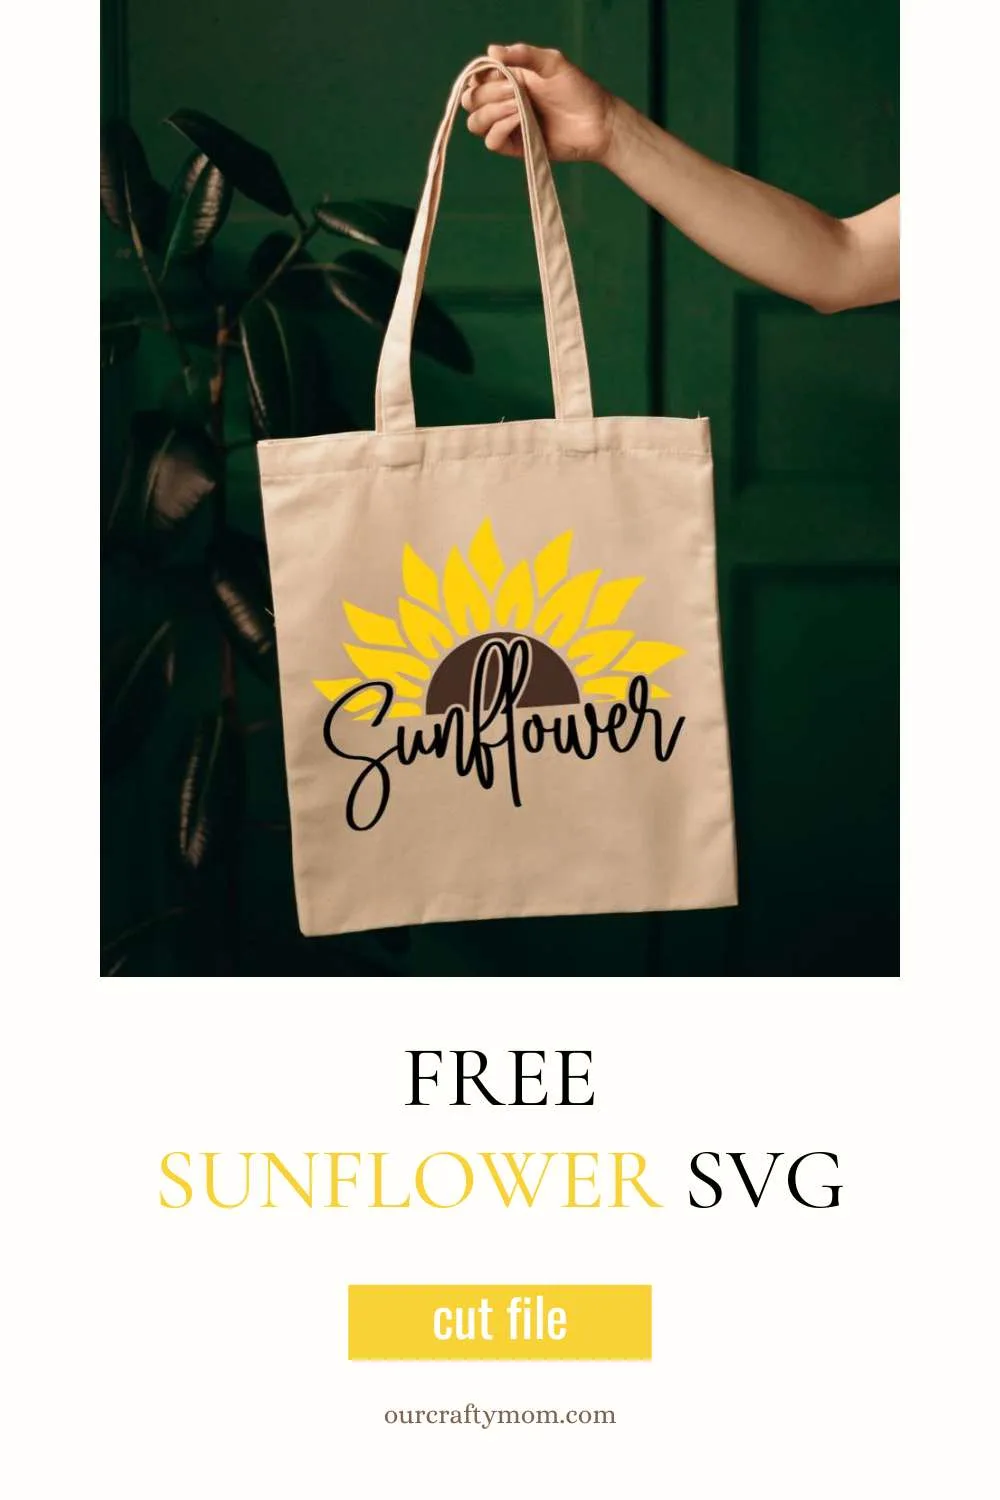 sunflower svg on tote bag